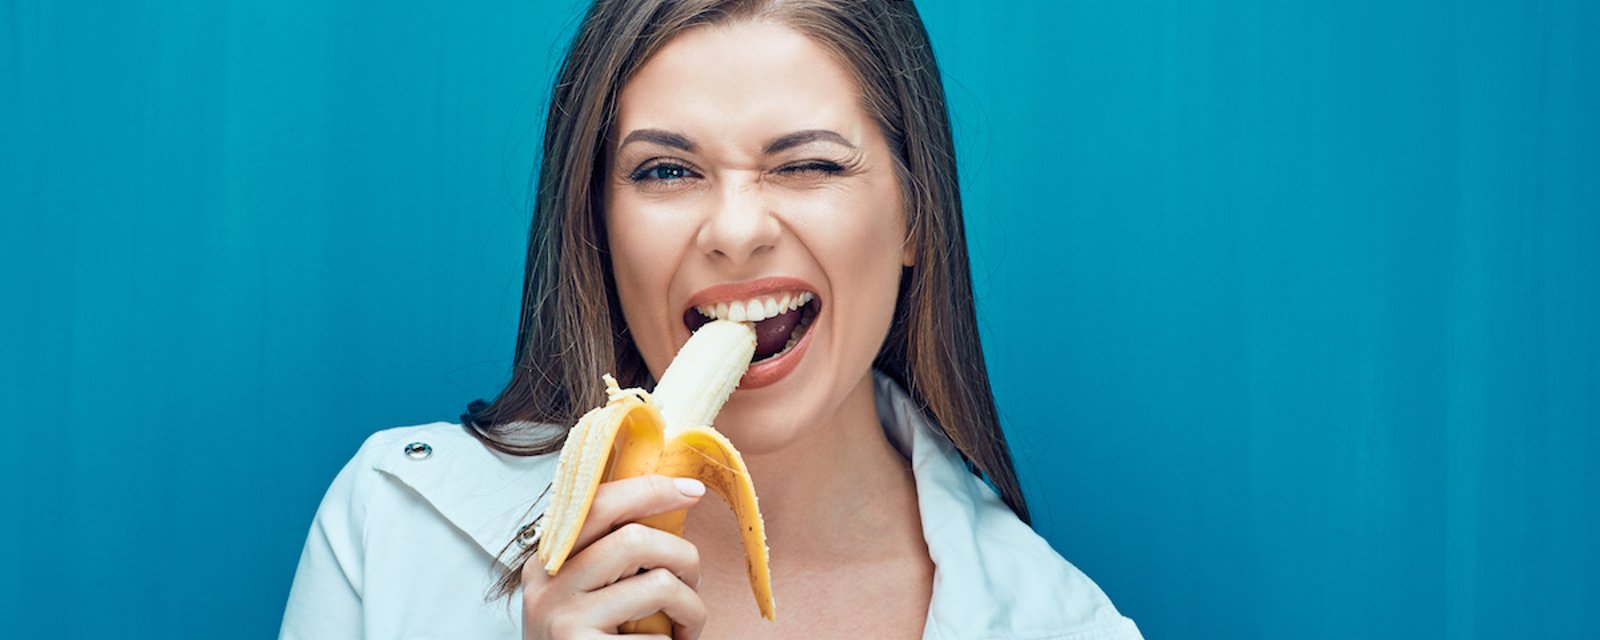 Les futures femmes enceintes qui consomment des bananes ont plus de chance de concevoir des garçons